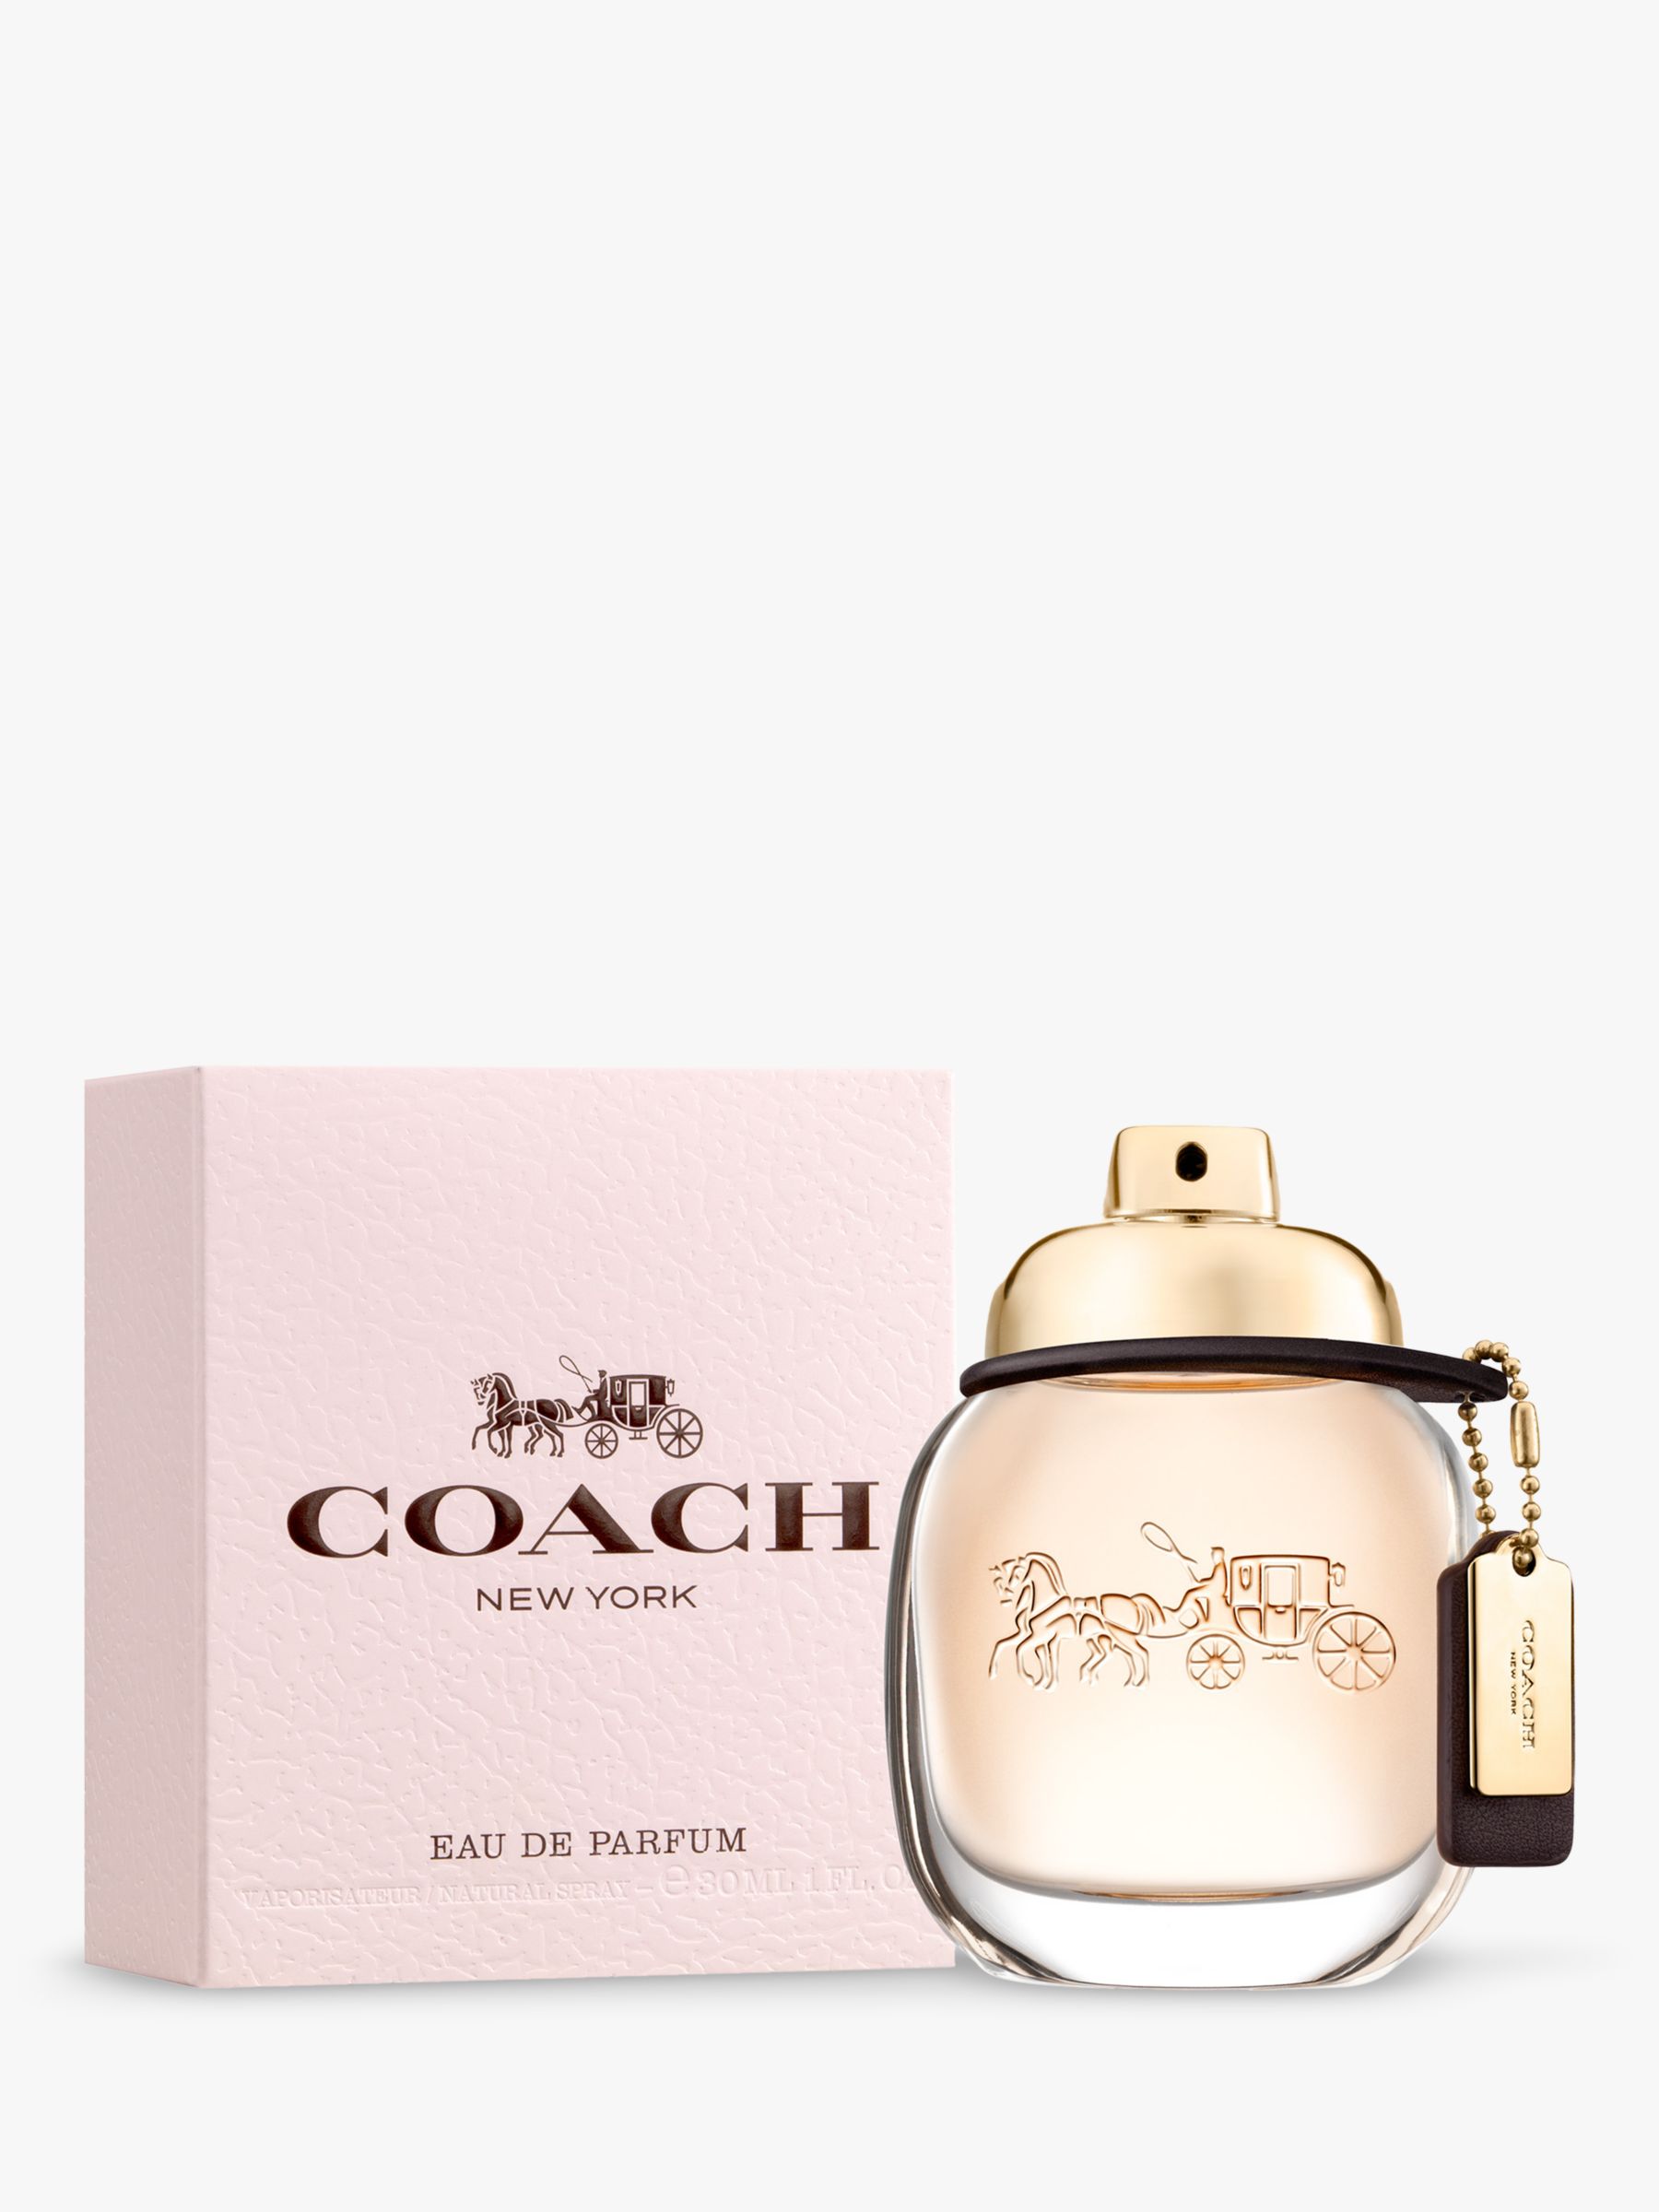 Coach The Fragrance Eau de Parfum, 30ml